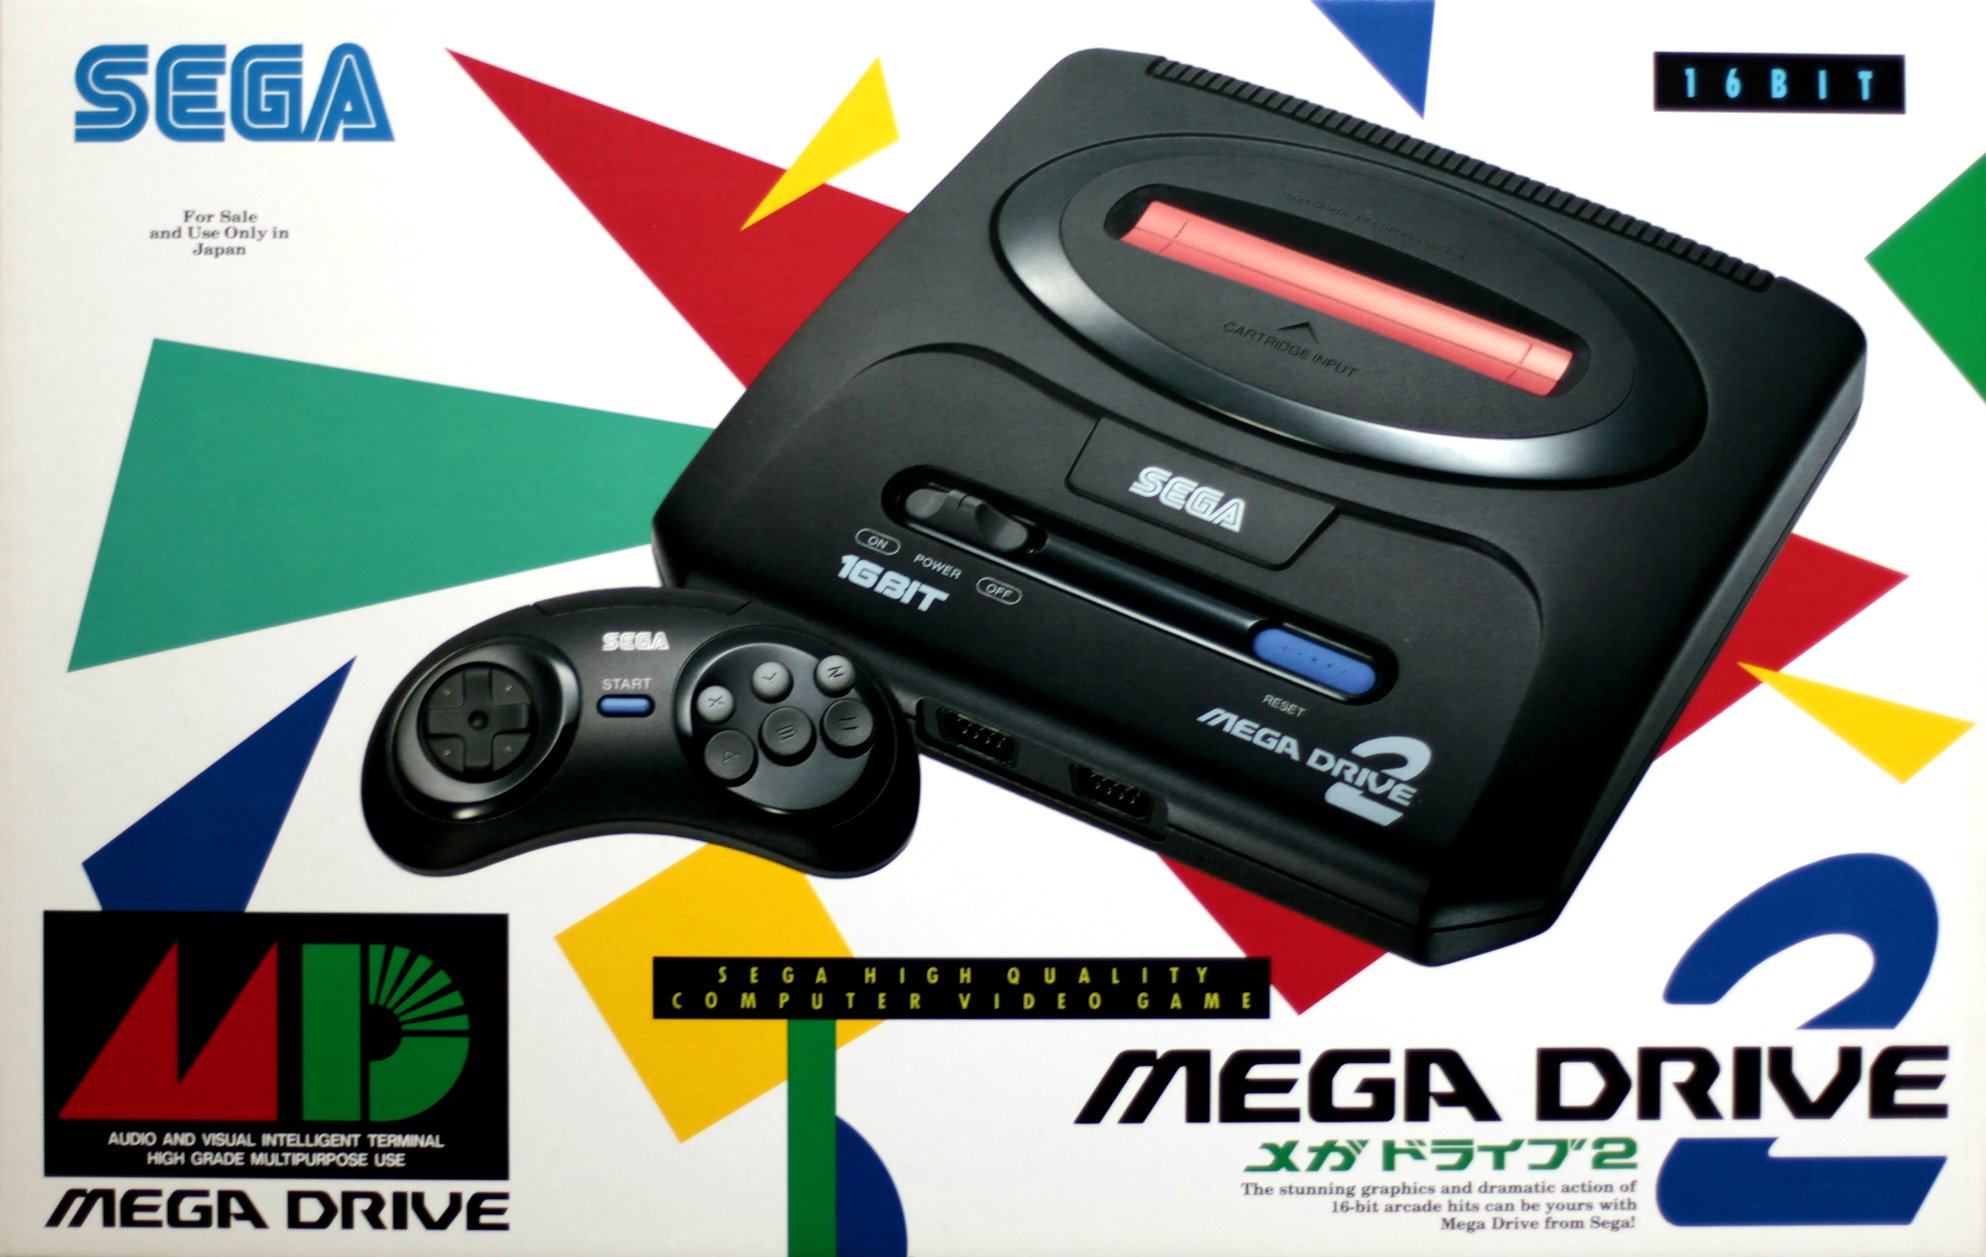 Sega mega drive genesis steam фото 38